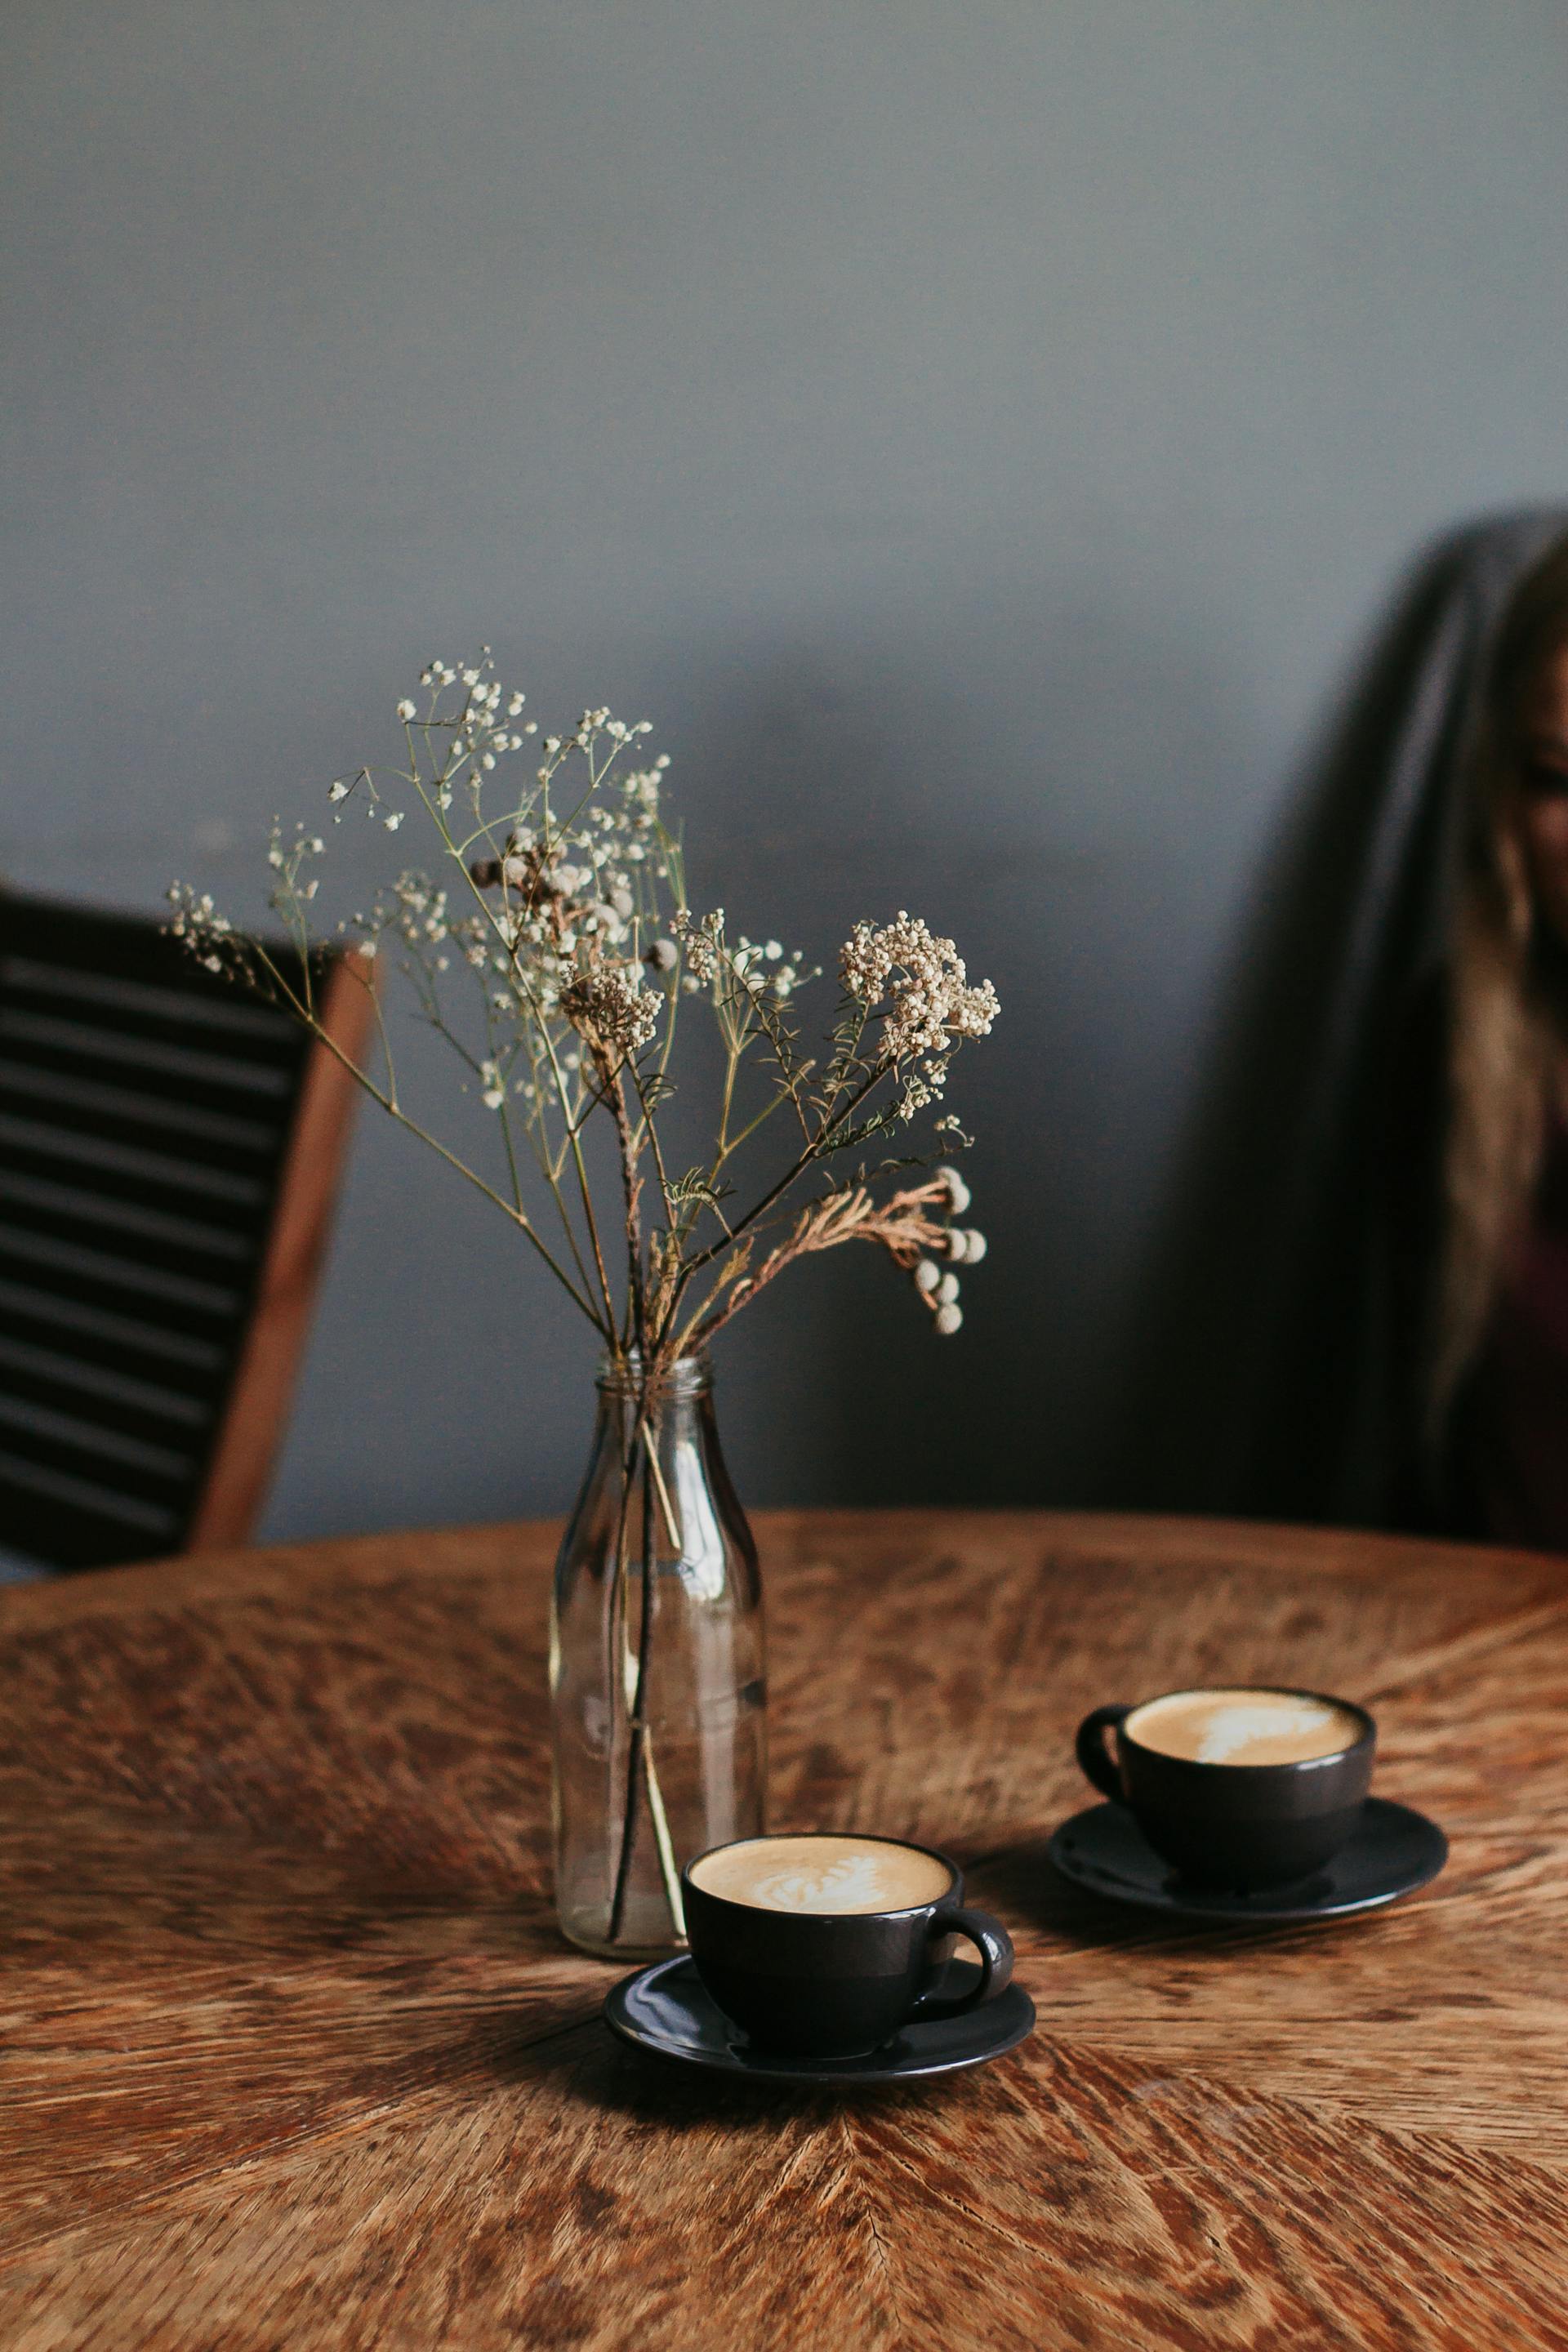 Dos tazas de café cerca de un jarrón de flores sobre una mesa | Fuente: Pexels